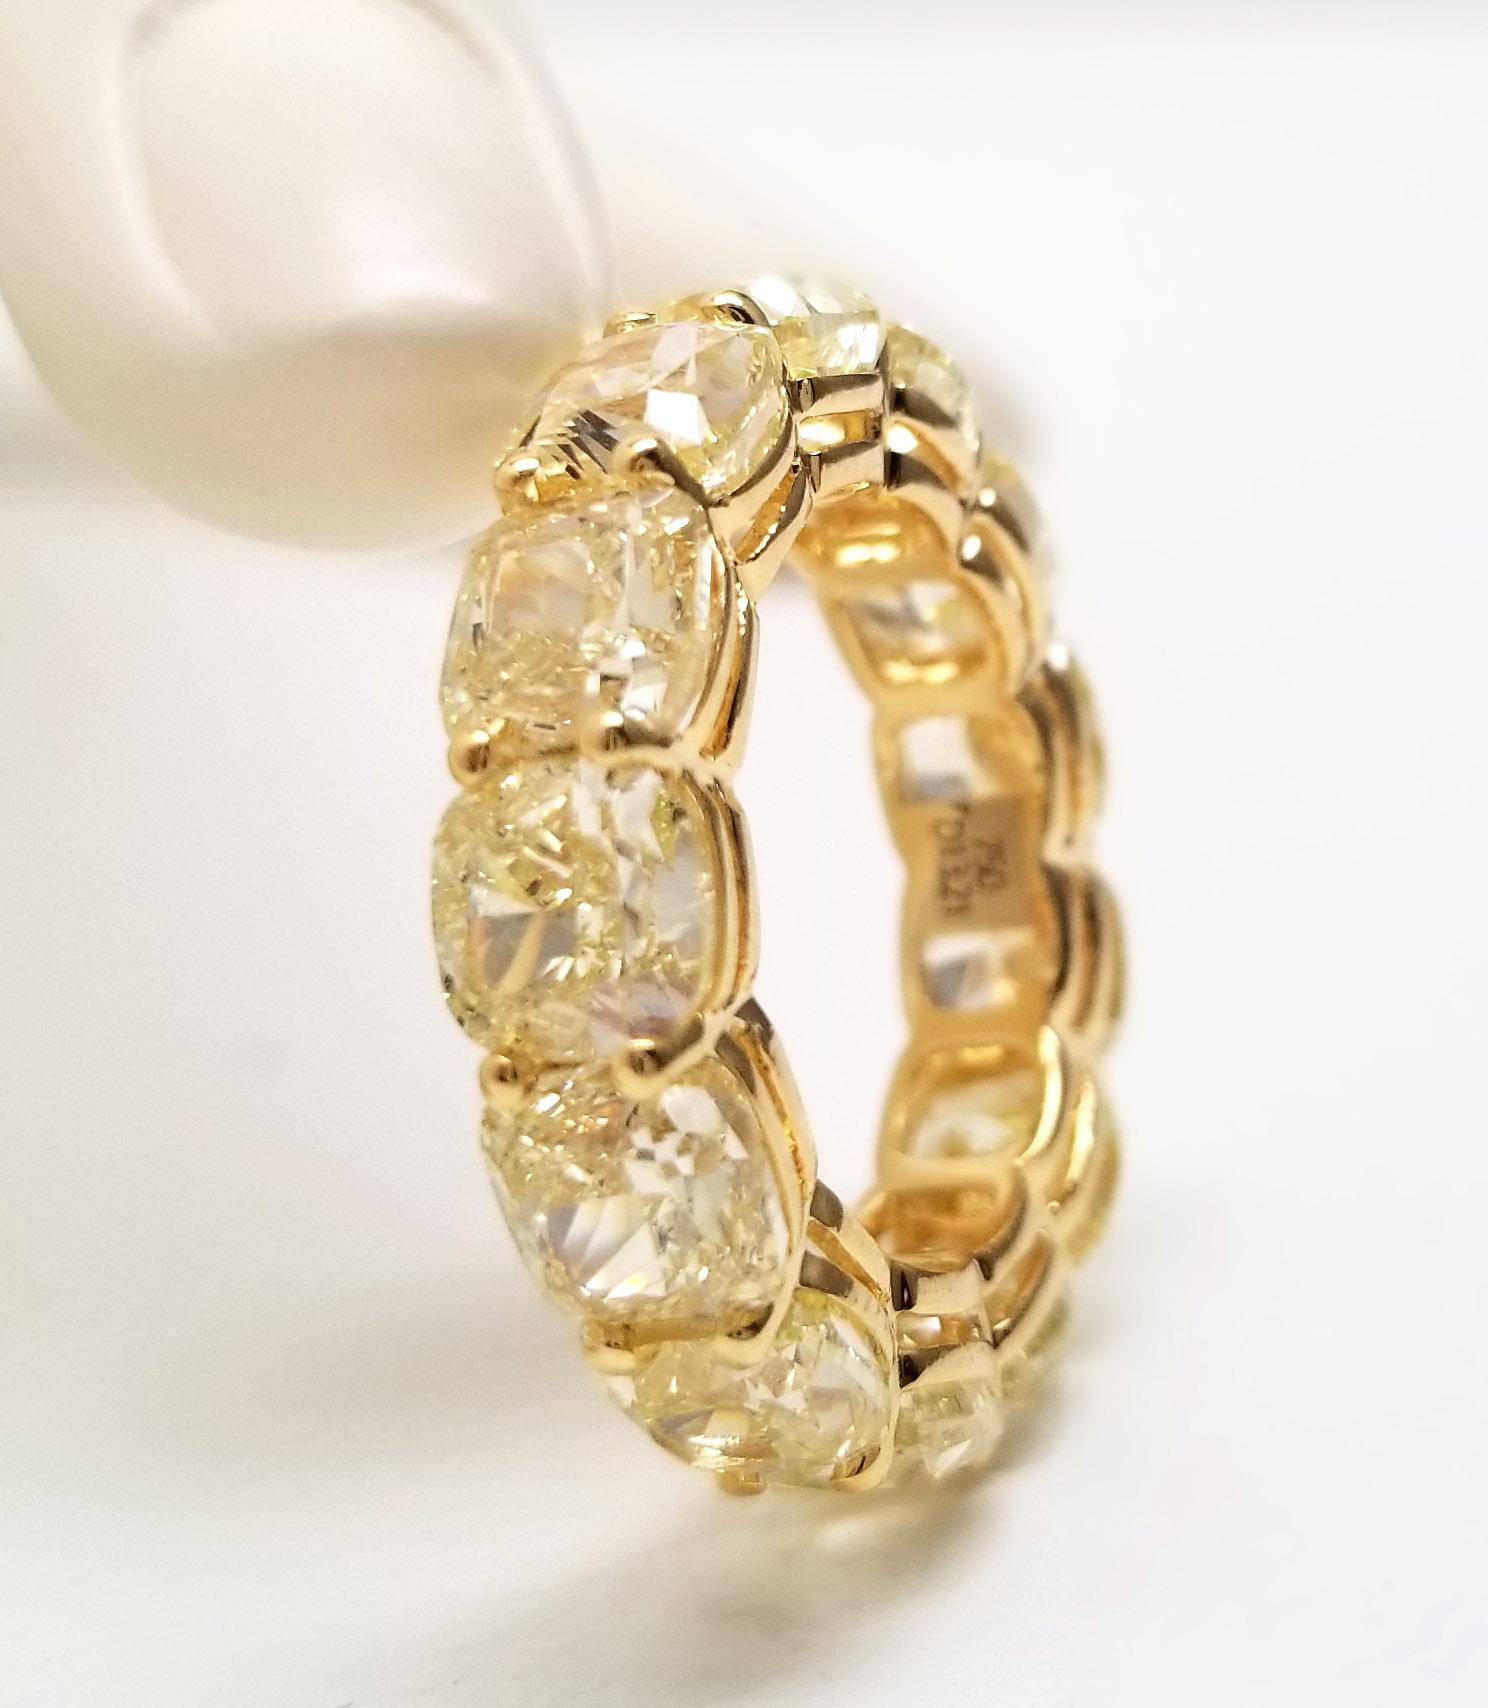 Ewigkeitsring bestehend aus 13 GIA-zertifizierten hellgelben Diamanten im Kissenschliff auf einem Band aus 18 Karat Gelbgold. 13,21 Karat natürliche hellgelbe Fancy-Diamanten von Scarselli formen ein elegantes Ewigkeitsarmband aus 18 Karat Gelbgold.